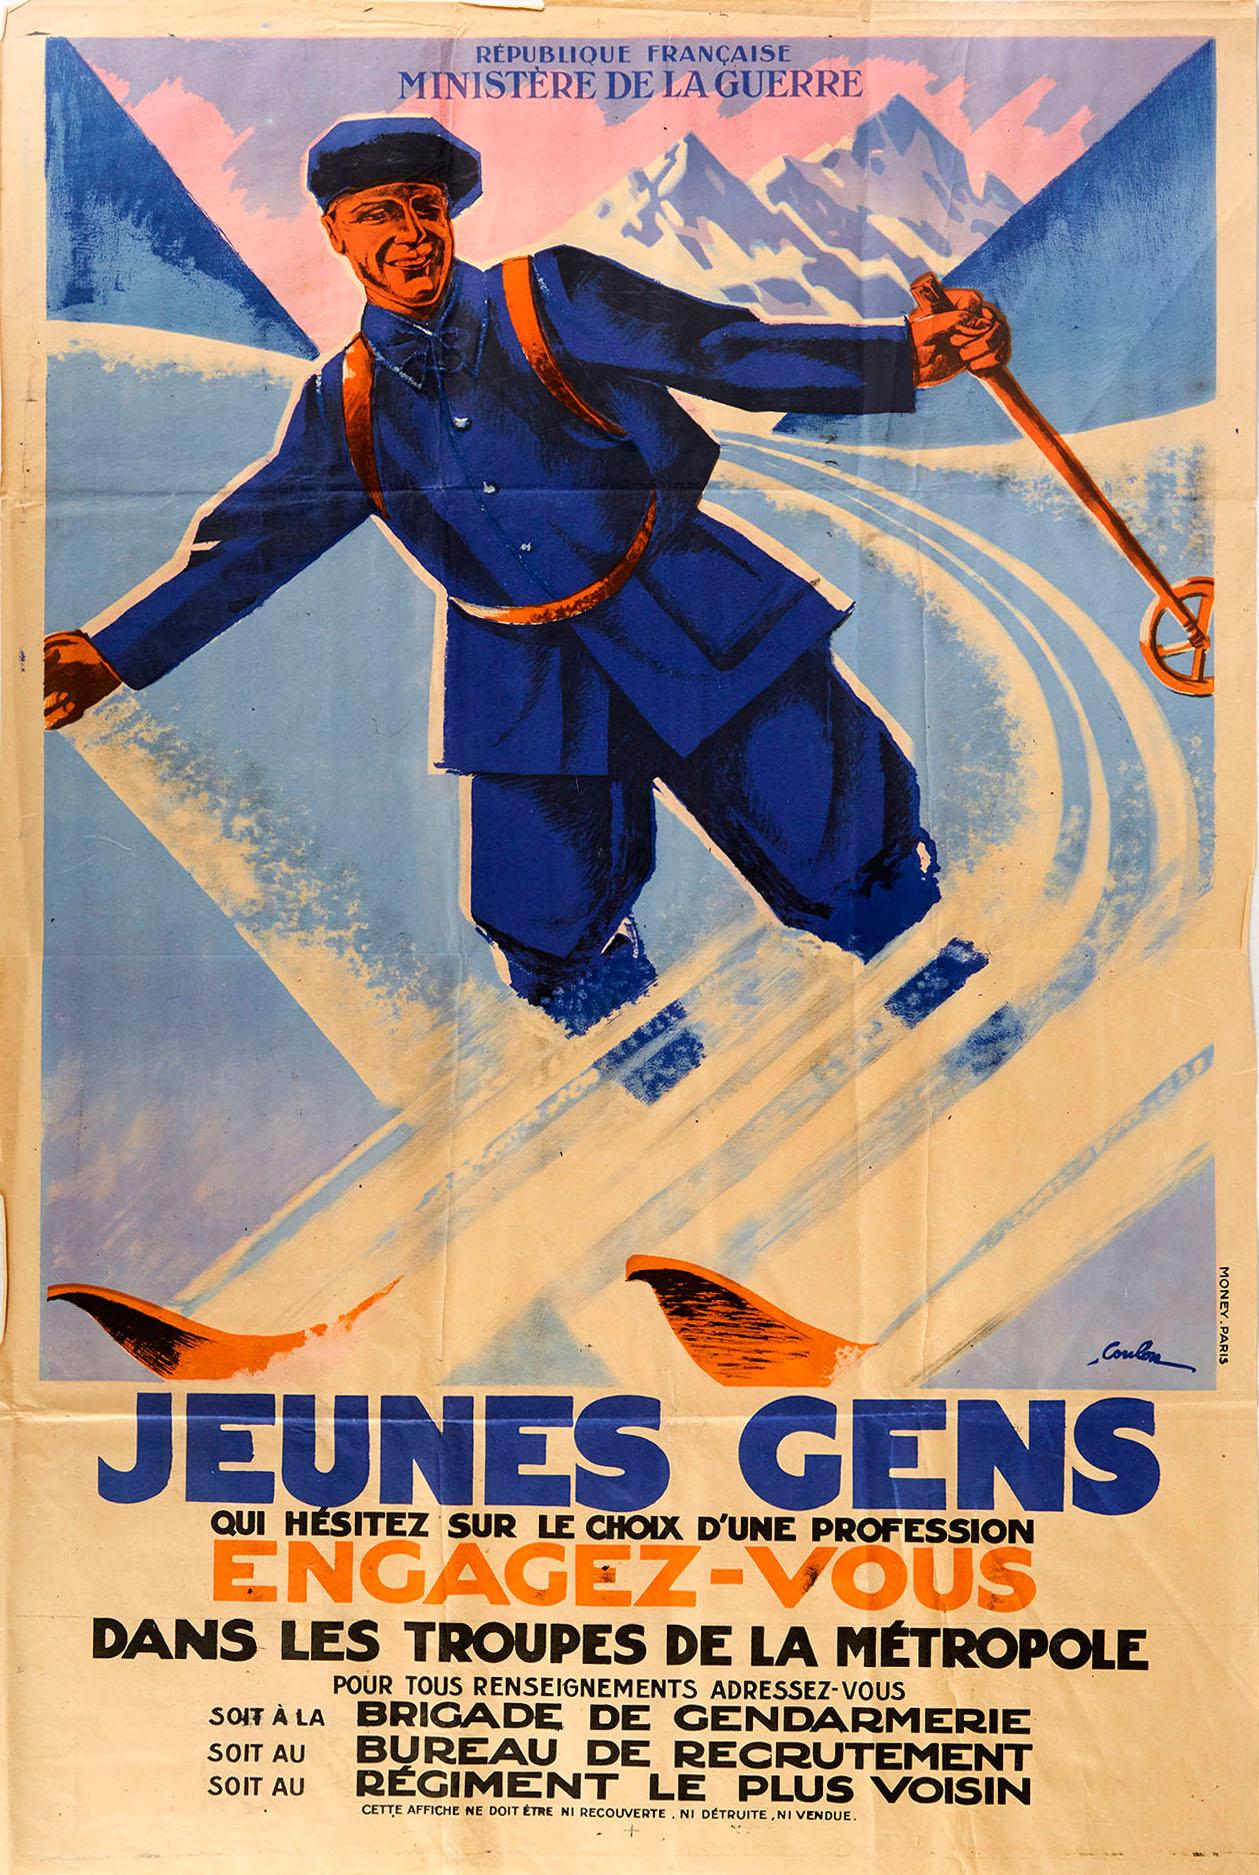 Eric de Coulon Print - Original Vintage Poster Military Recruitment Troupes De La Metropole French Army